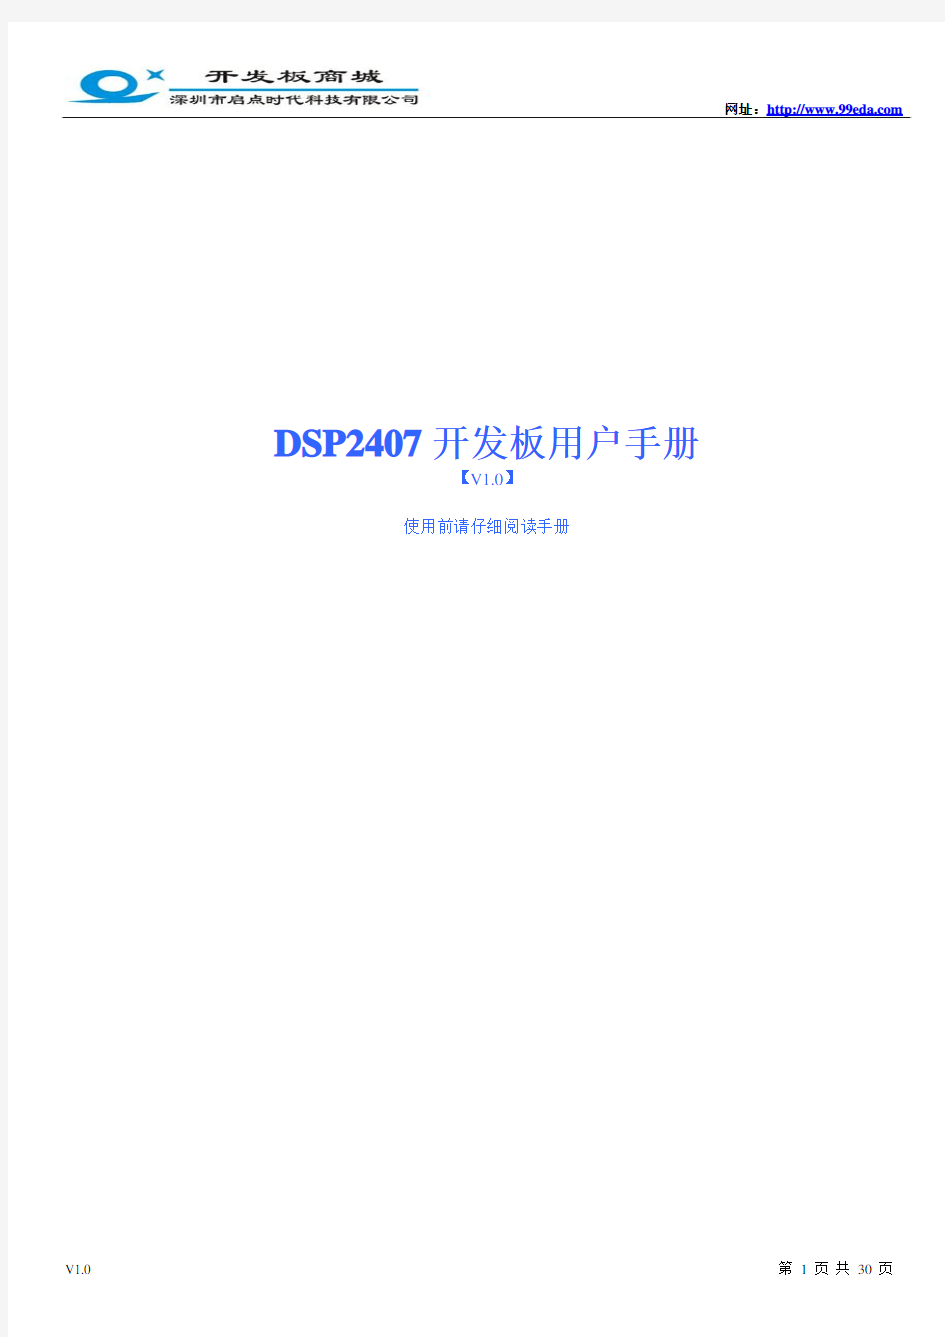 DSP2407用户手册